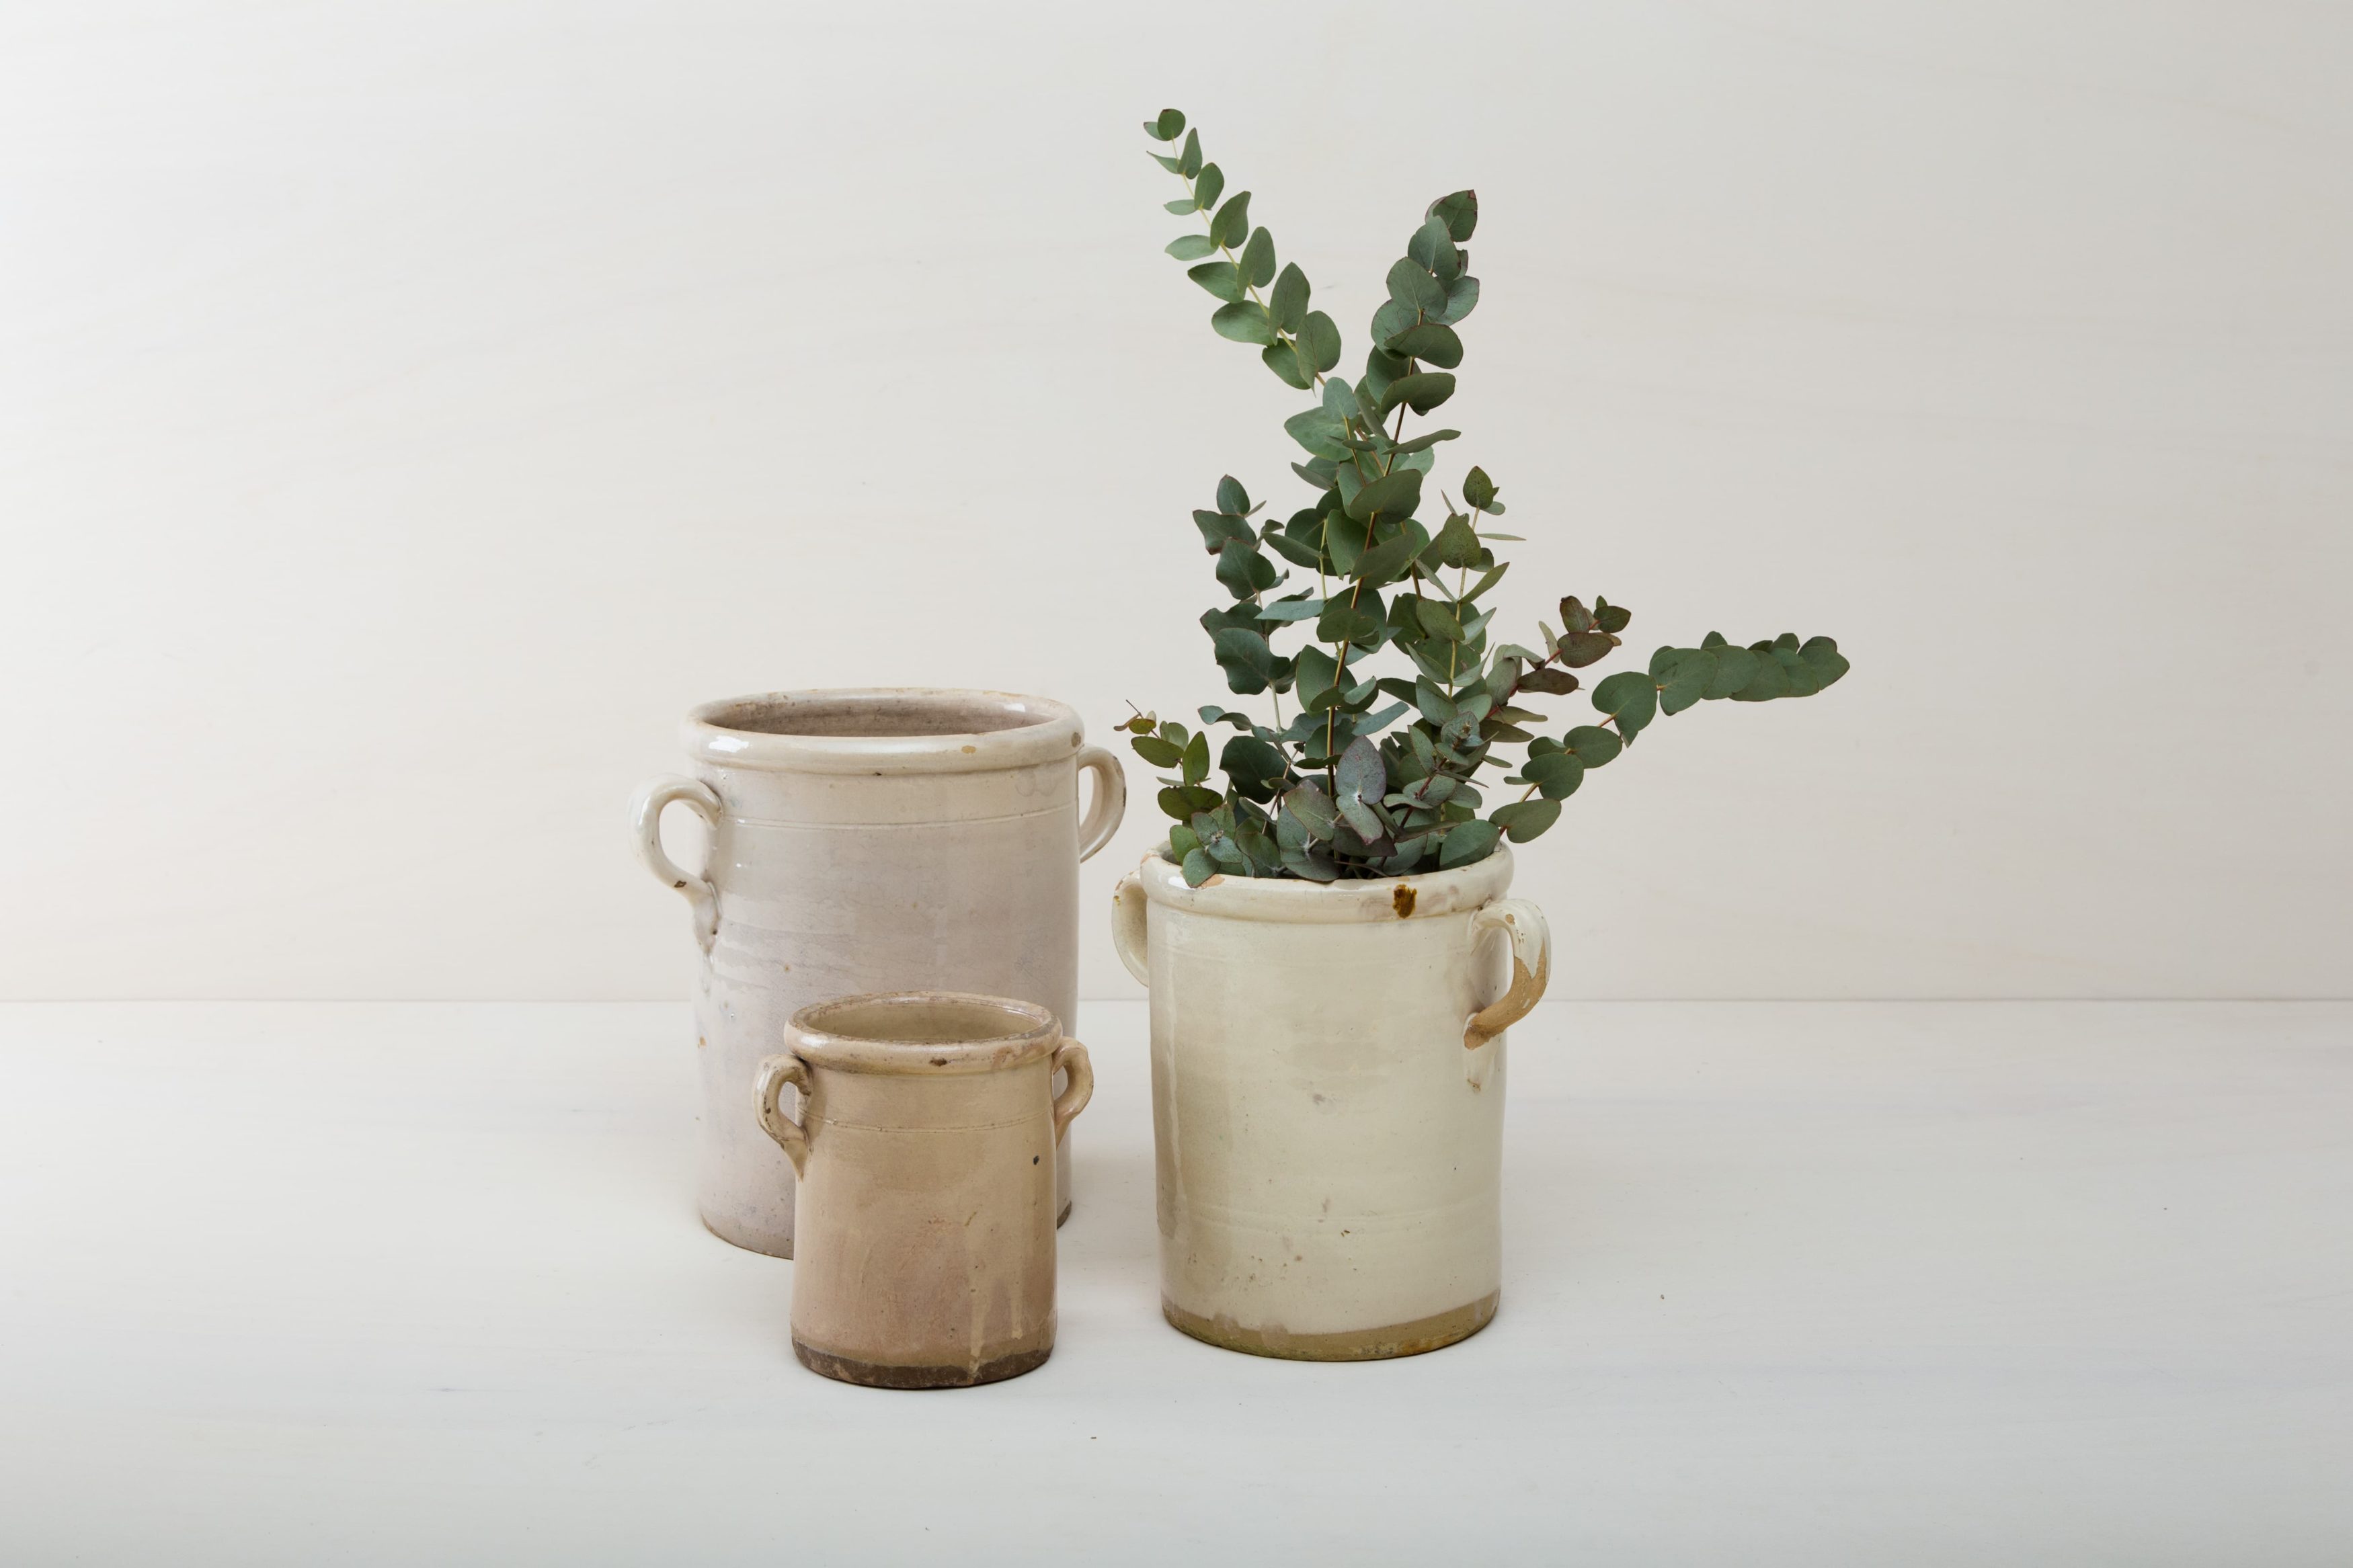 Diese elfenbeinfarbenen Vase der Serie Humaita ist, mit ihrer zinnhaltigen Glasur, etwas ganz besonderes unter den rustikalen Gefäßen. Mehrere Vasen verwendet, geben sie ein harmonisches Bild ab und sehen zu Herbst wie Sommerevents gleichermaßen gut aus. Ob als Vase für einen tollen Herbst- oder Kornblumenstrauß oder aber als Süßigkeitendose auf dem Buffettisch– Vase Humaita ist abwechslungsreich und hat eine schöne Patina. Robba bianca, Monochrome elfenbeinfarbene Glasur ist in Süditalien sehr beliebt. Die alten zylindrischen Vorratsgefässe stammen aus den 1920er Jahren und es wurden darin Gemüse in Öl und Essig gelagert. Nun gut gereinigt kannst Du die Gefäße als Vase für Dein Eventstyling oder Hochzeitsdekoration einsetzen.